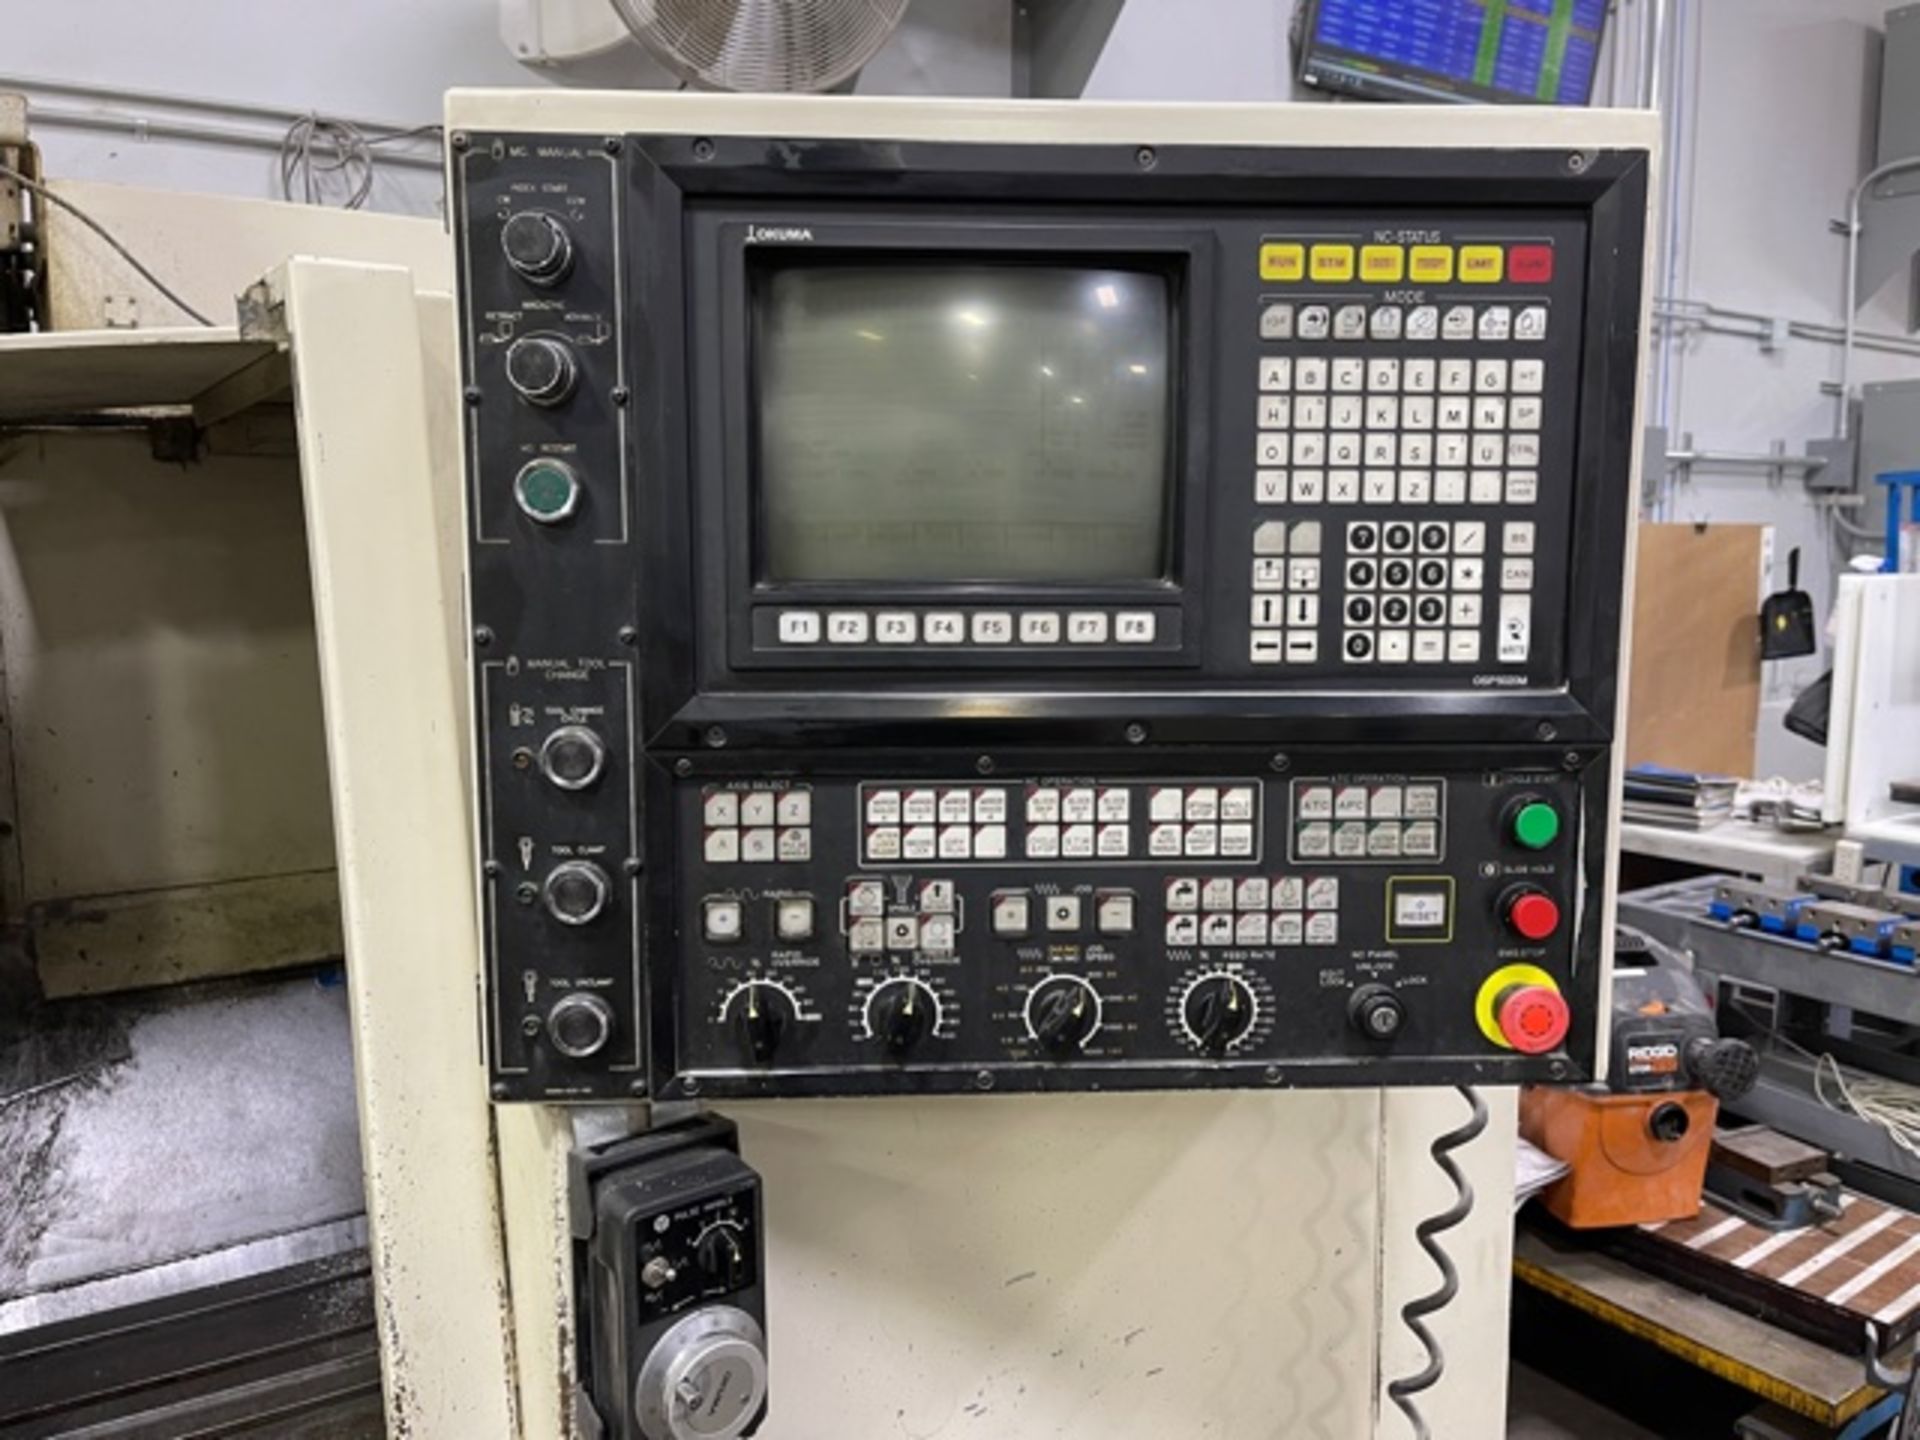 Okuma Cadet Mate 4020 CNC Vertical Machining Center s/m 0081 w/ Okuma OSP5020M Controls, SOLD AS IS - Image 2 of 5